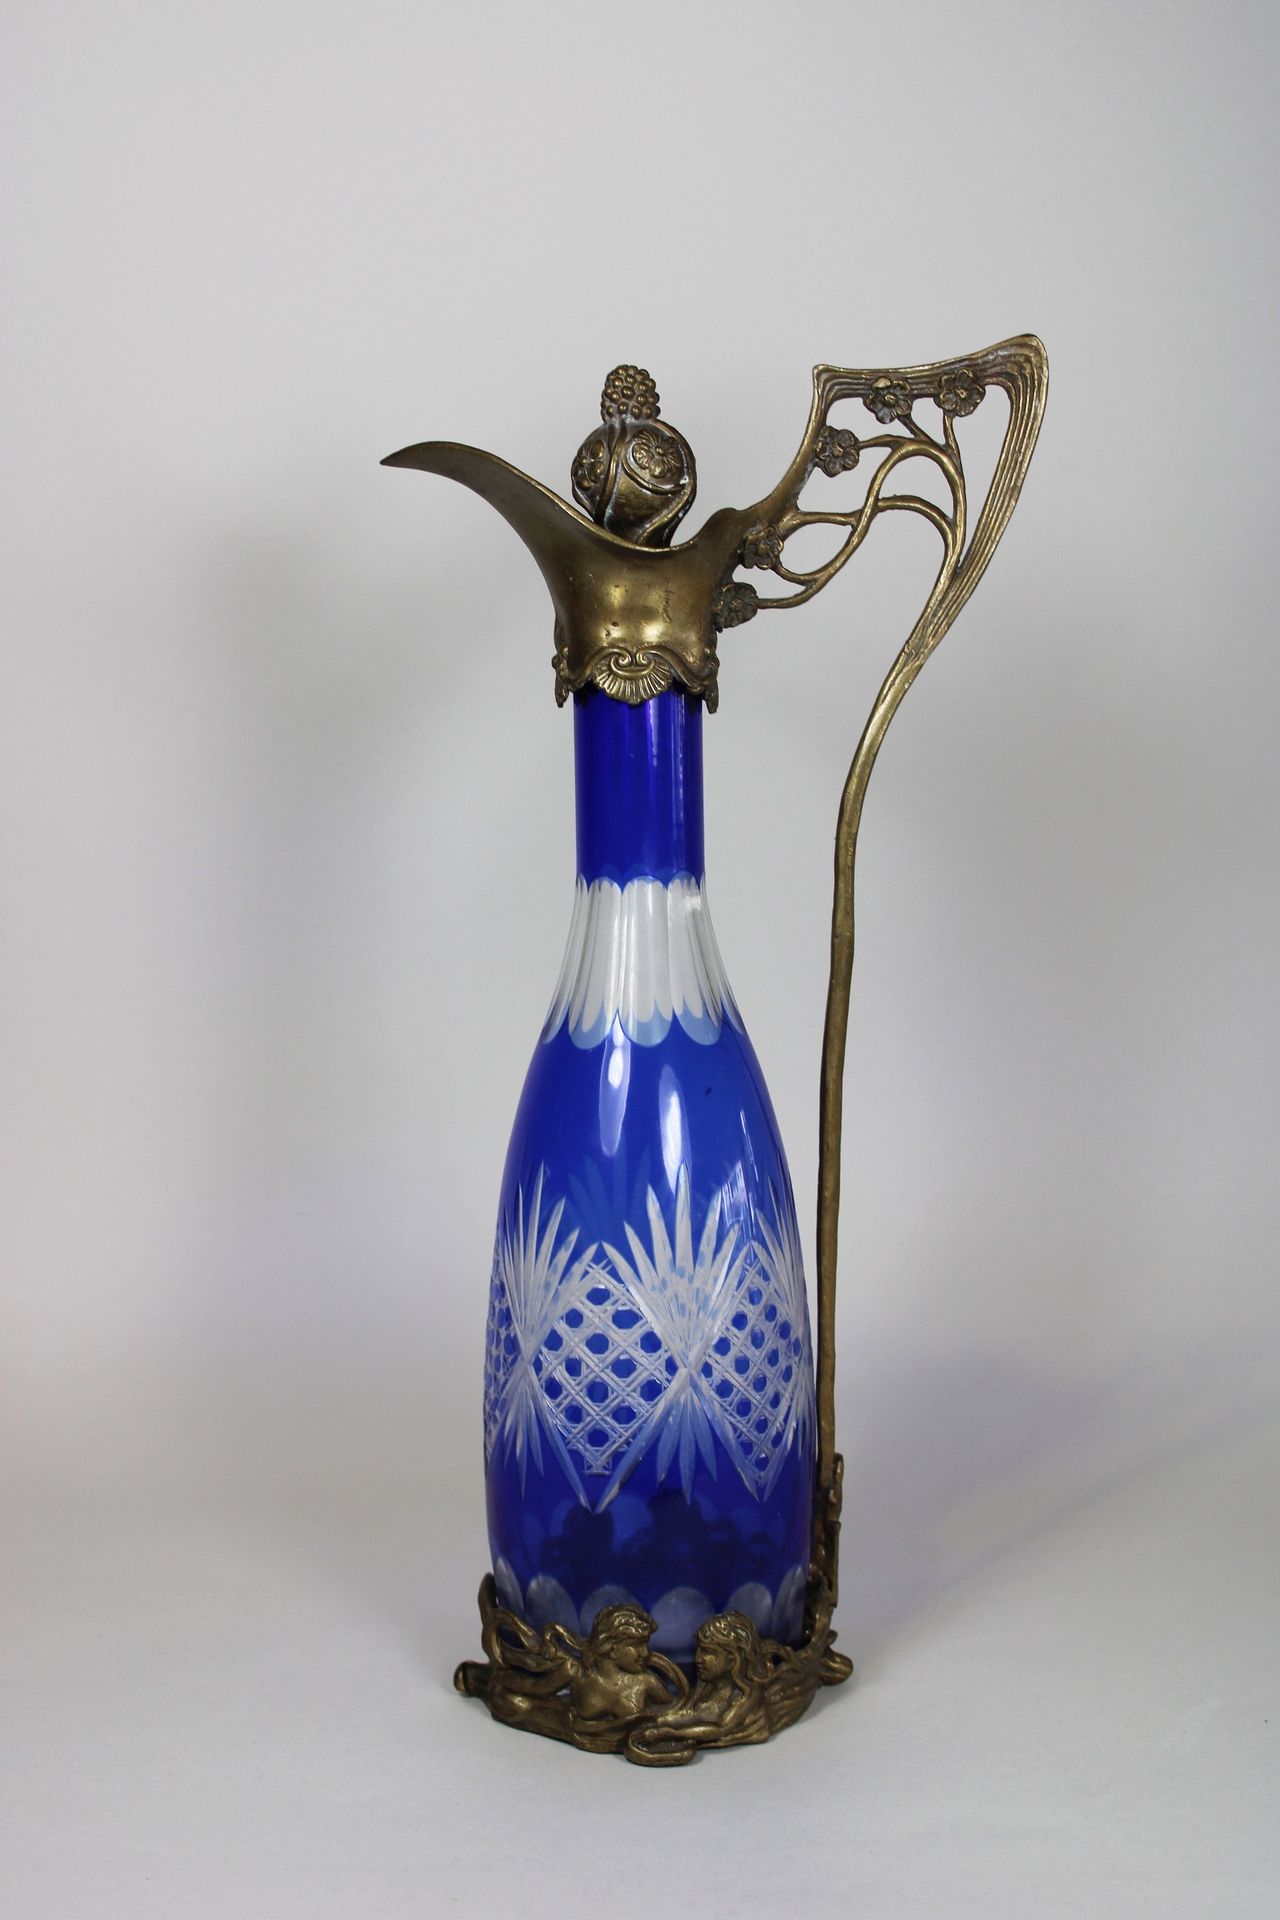 Jugendstilkaraffe, 20. Jh. Jarra Art Nouveau, siglo XX, vidrio de color azul, ta&hellip;